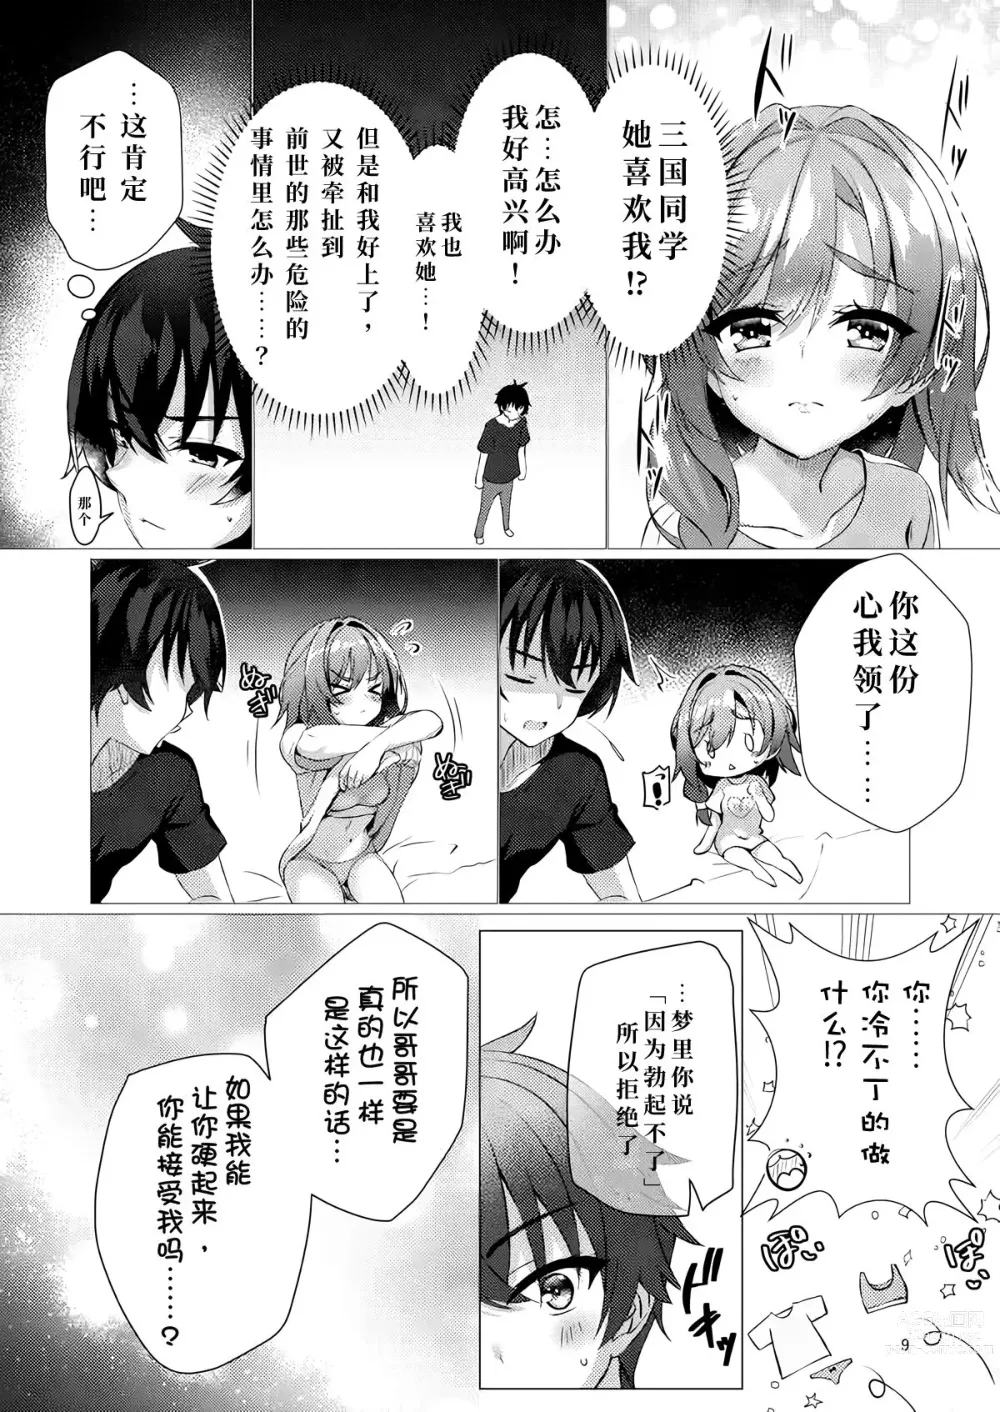 Page 8 of doujinshi 若已与你在梦中相遇过。